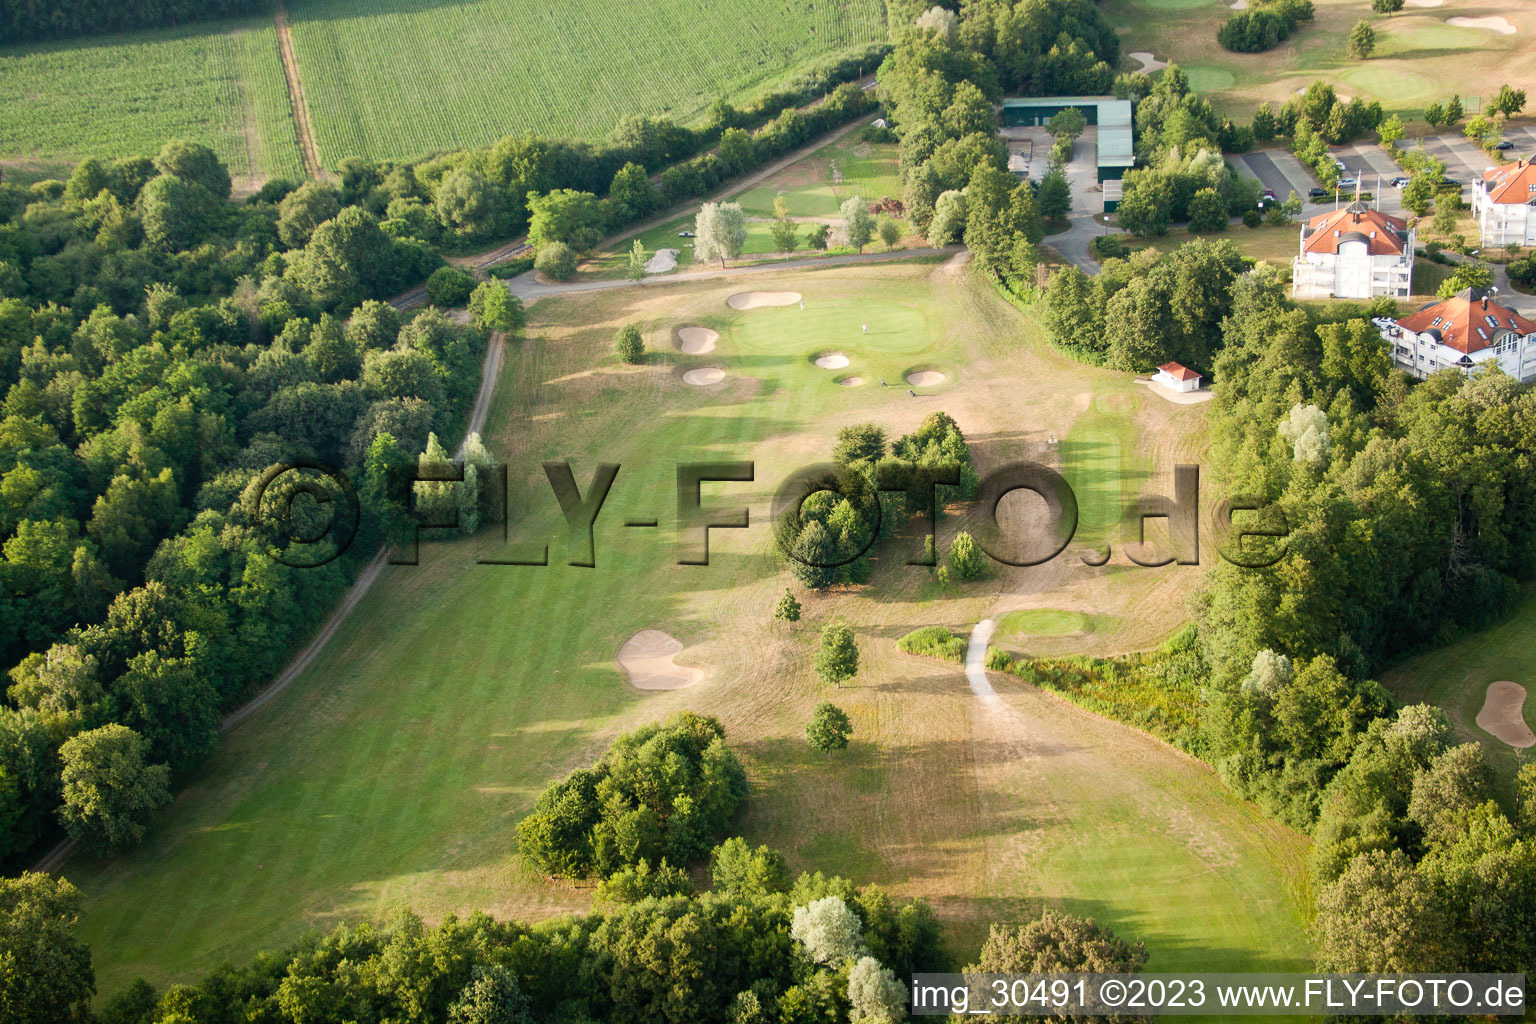 Club de golf Soufflenheim Baden-Baden à Soufflenheim dans le département Bas Rhin, France d'en haut